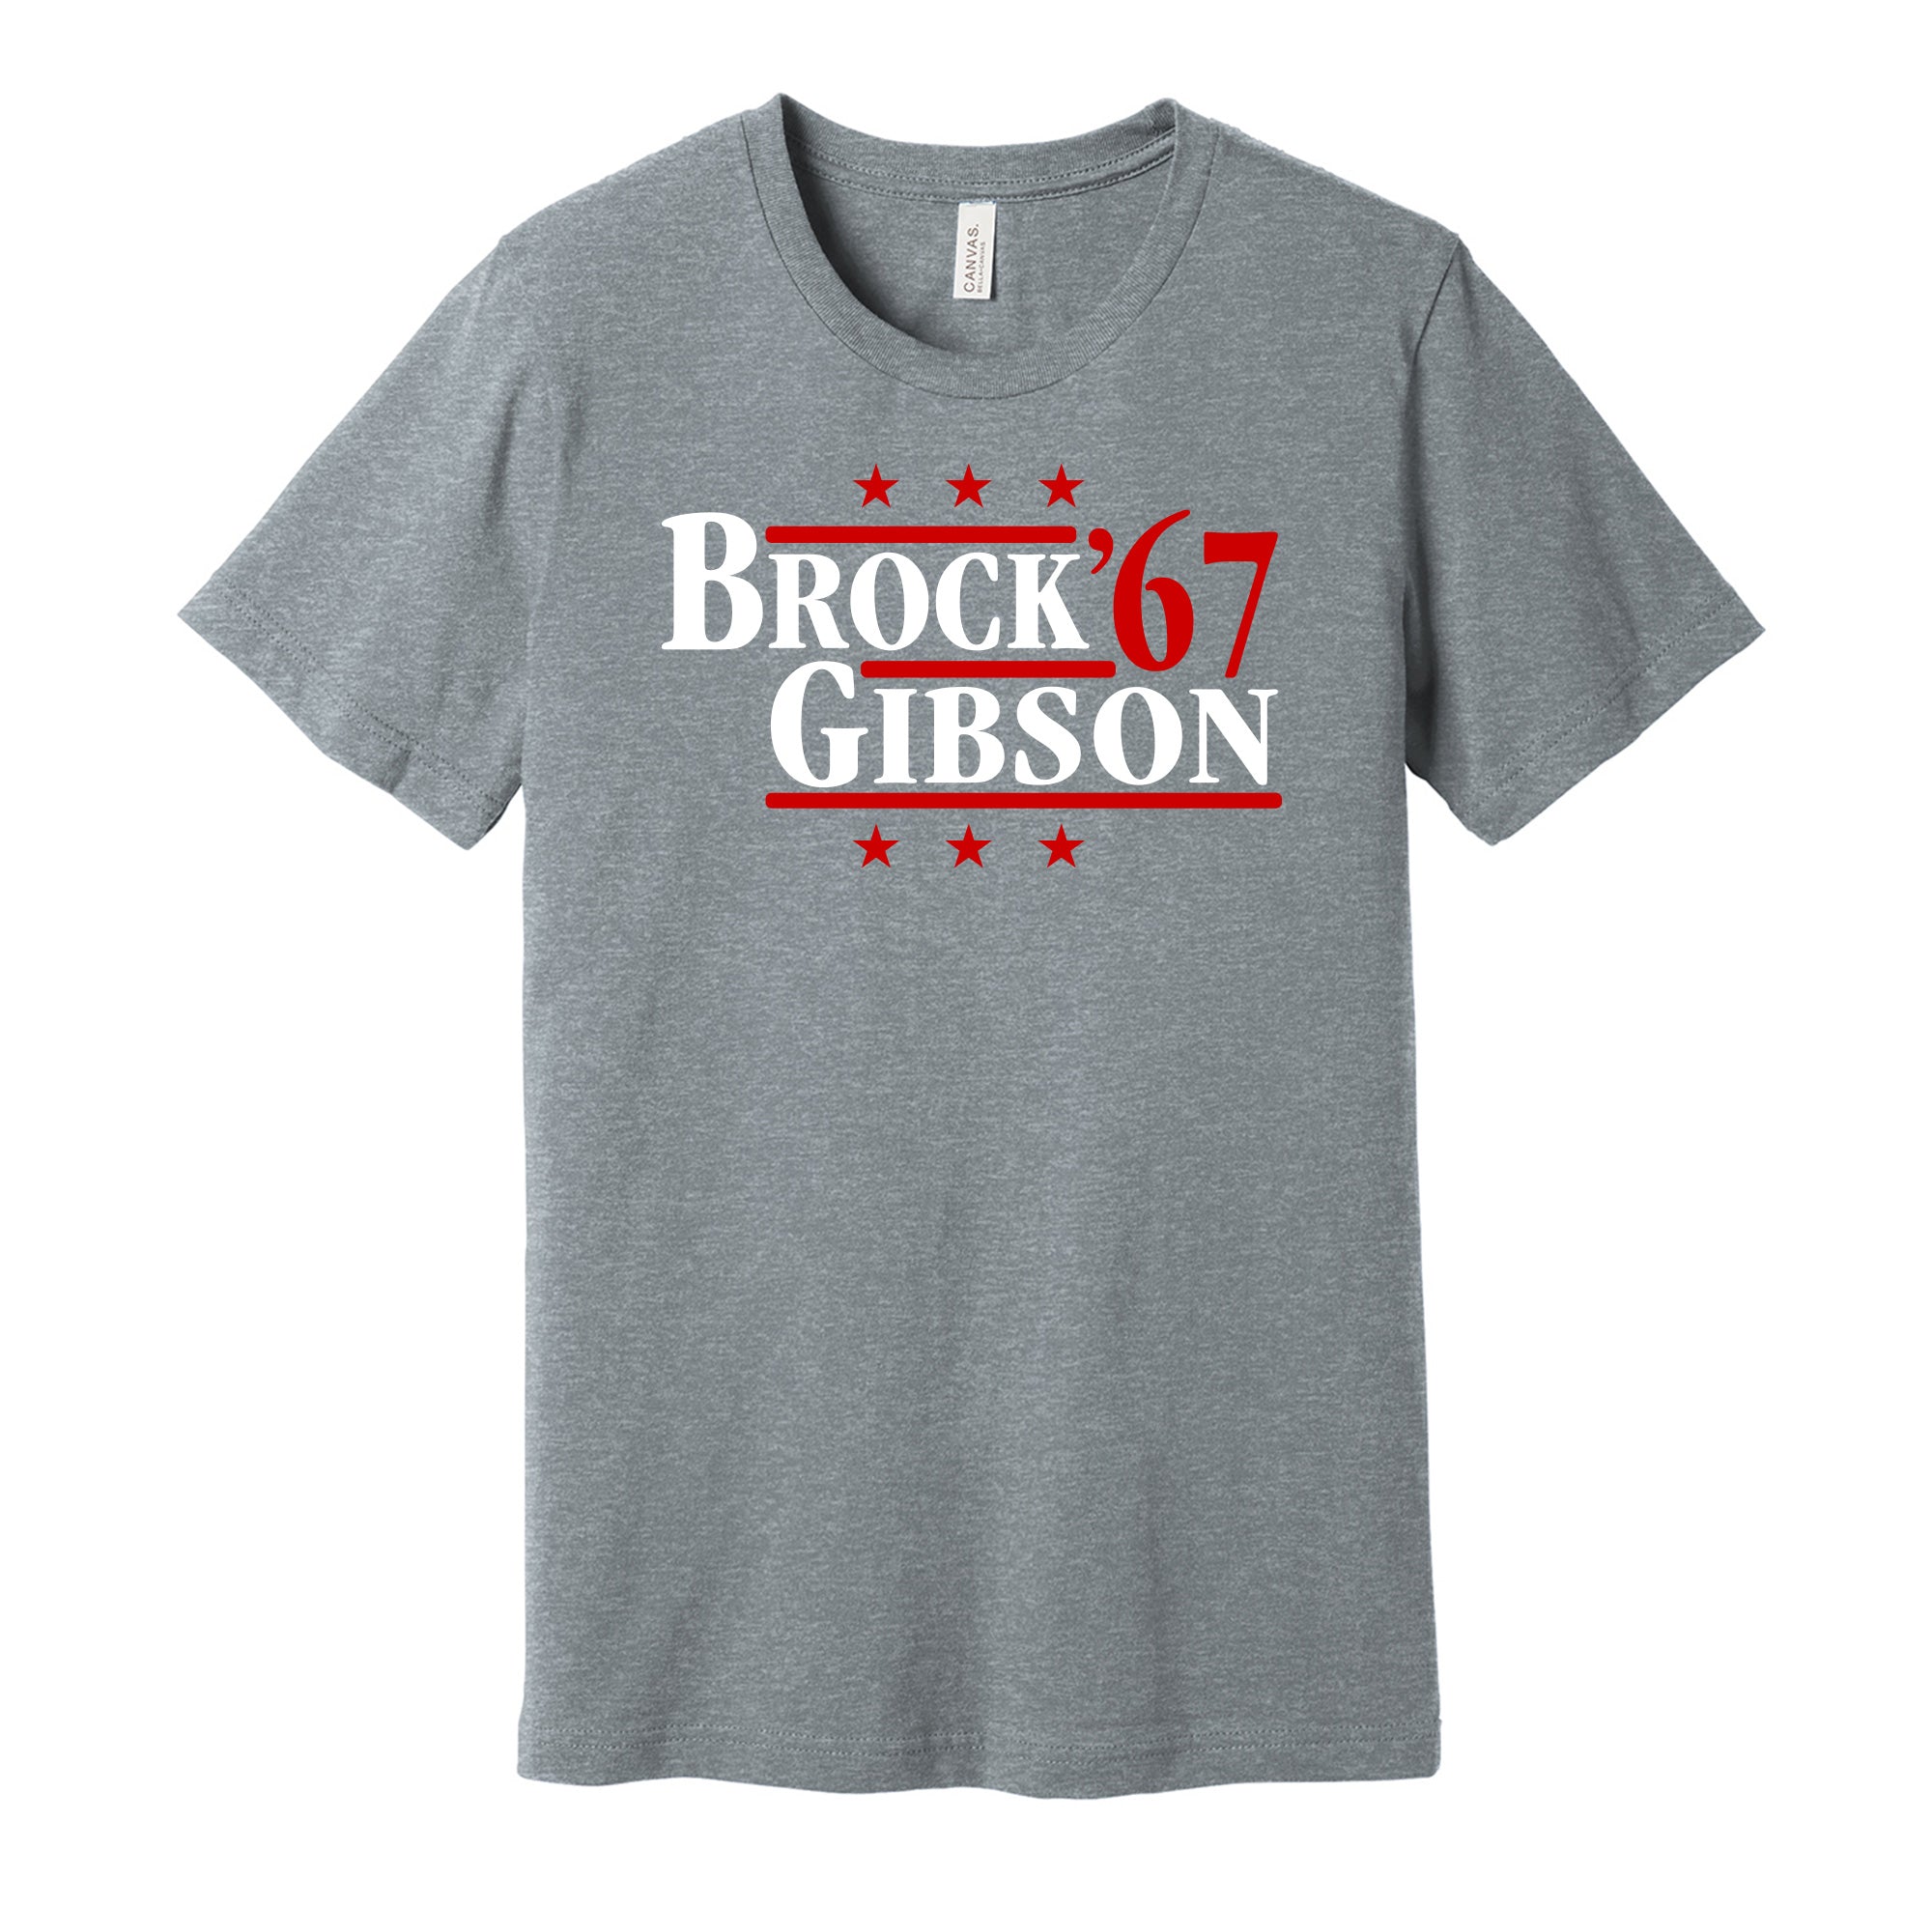 Brock & Gibson '67 - St. Louis Missouri Legends Political Campaign Parody T-Shirt - Hyper Than Hype Shirts L / Grey Shirt